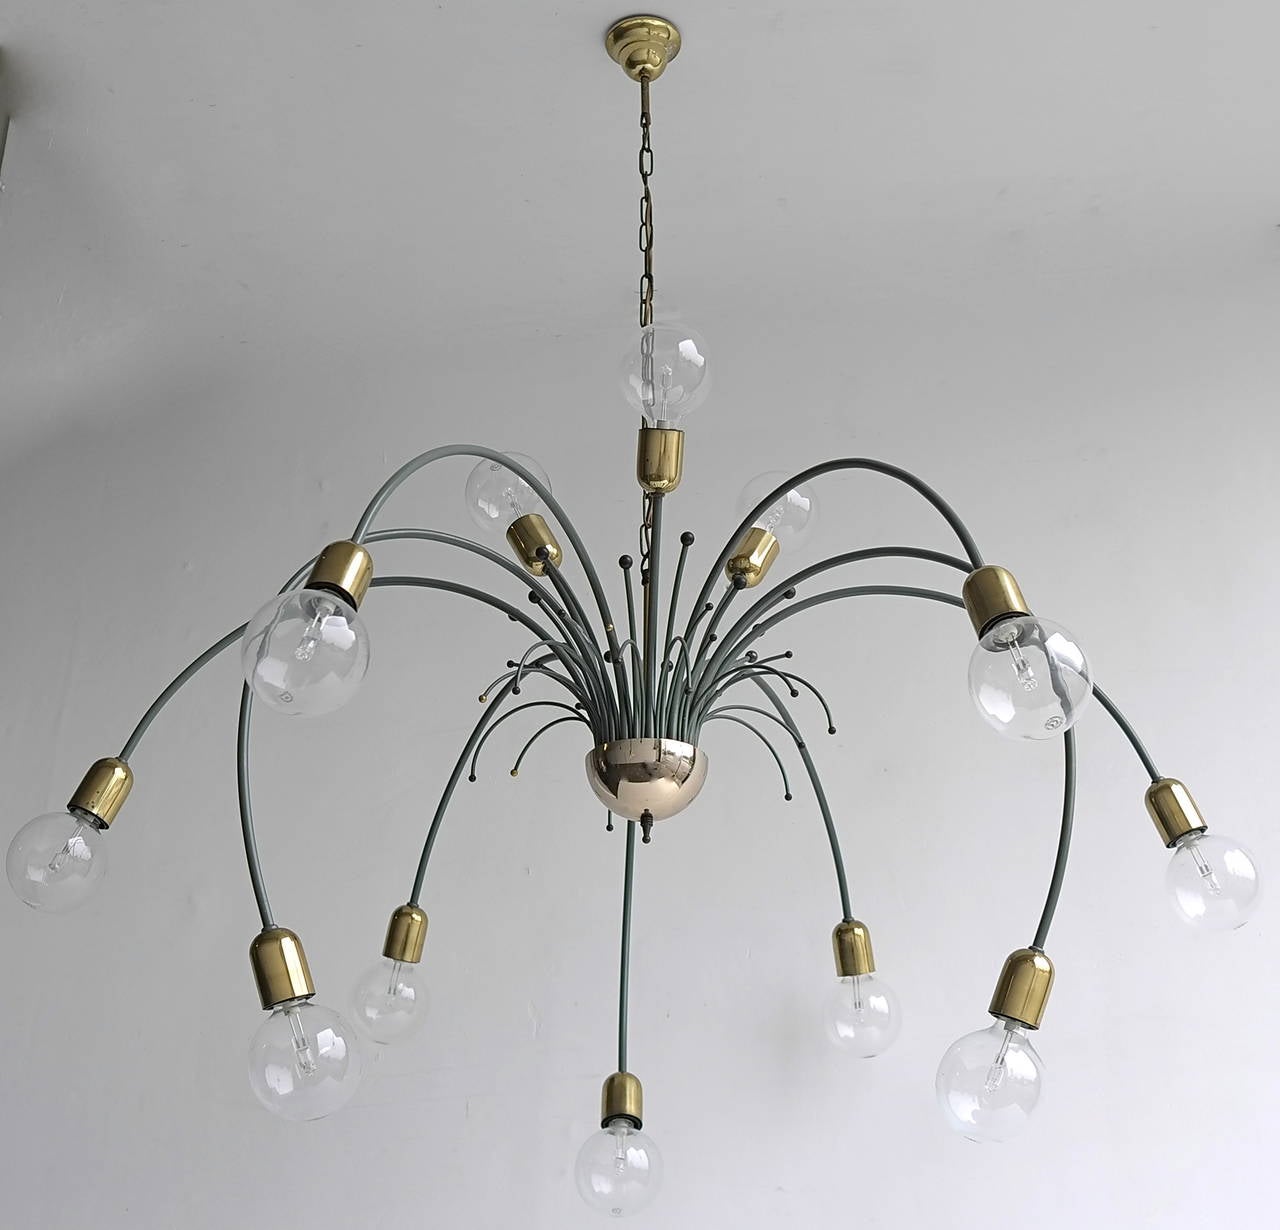 Pair of large elegant Sputnik chandeliers